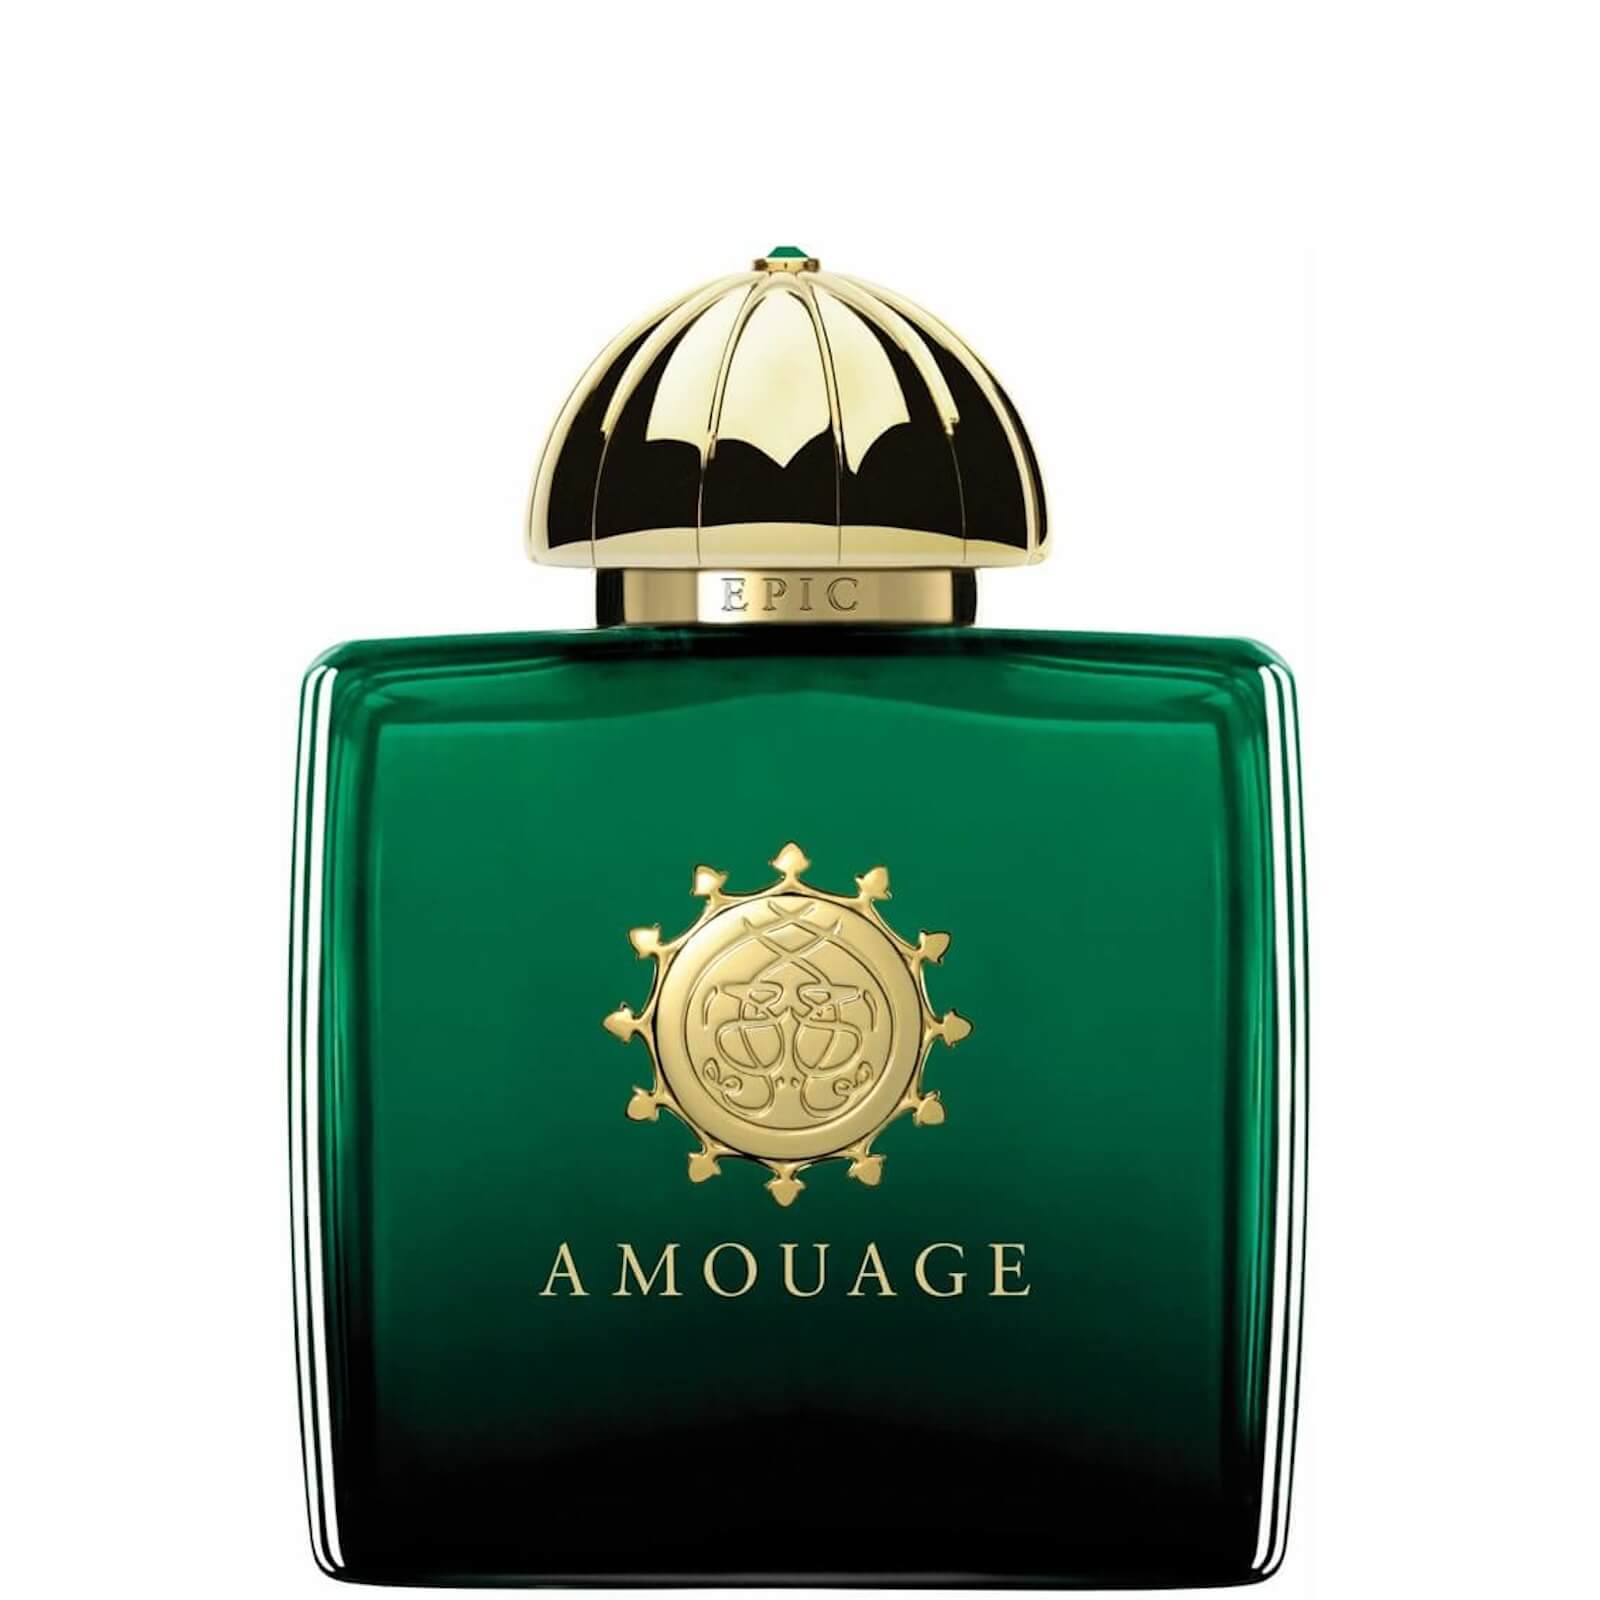 Photos - Women's Fragrance Amouage Epic Woman Eau de Parfum  AMOUAGE14 (100ml)